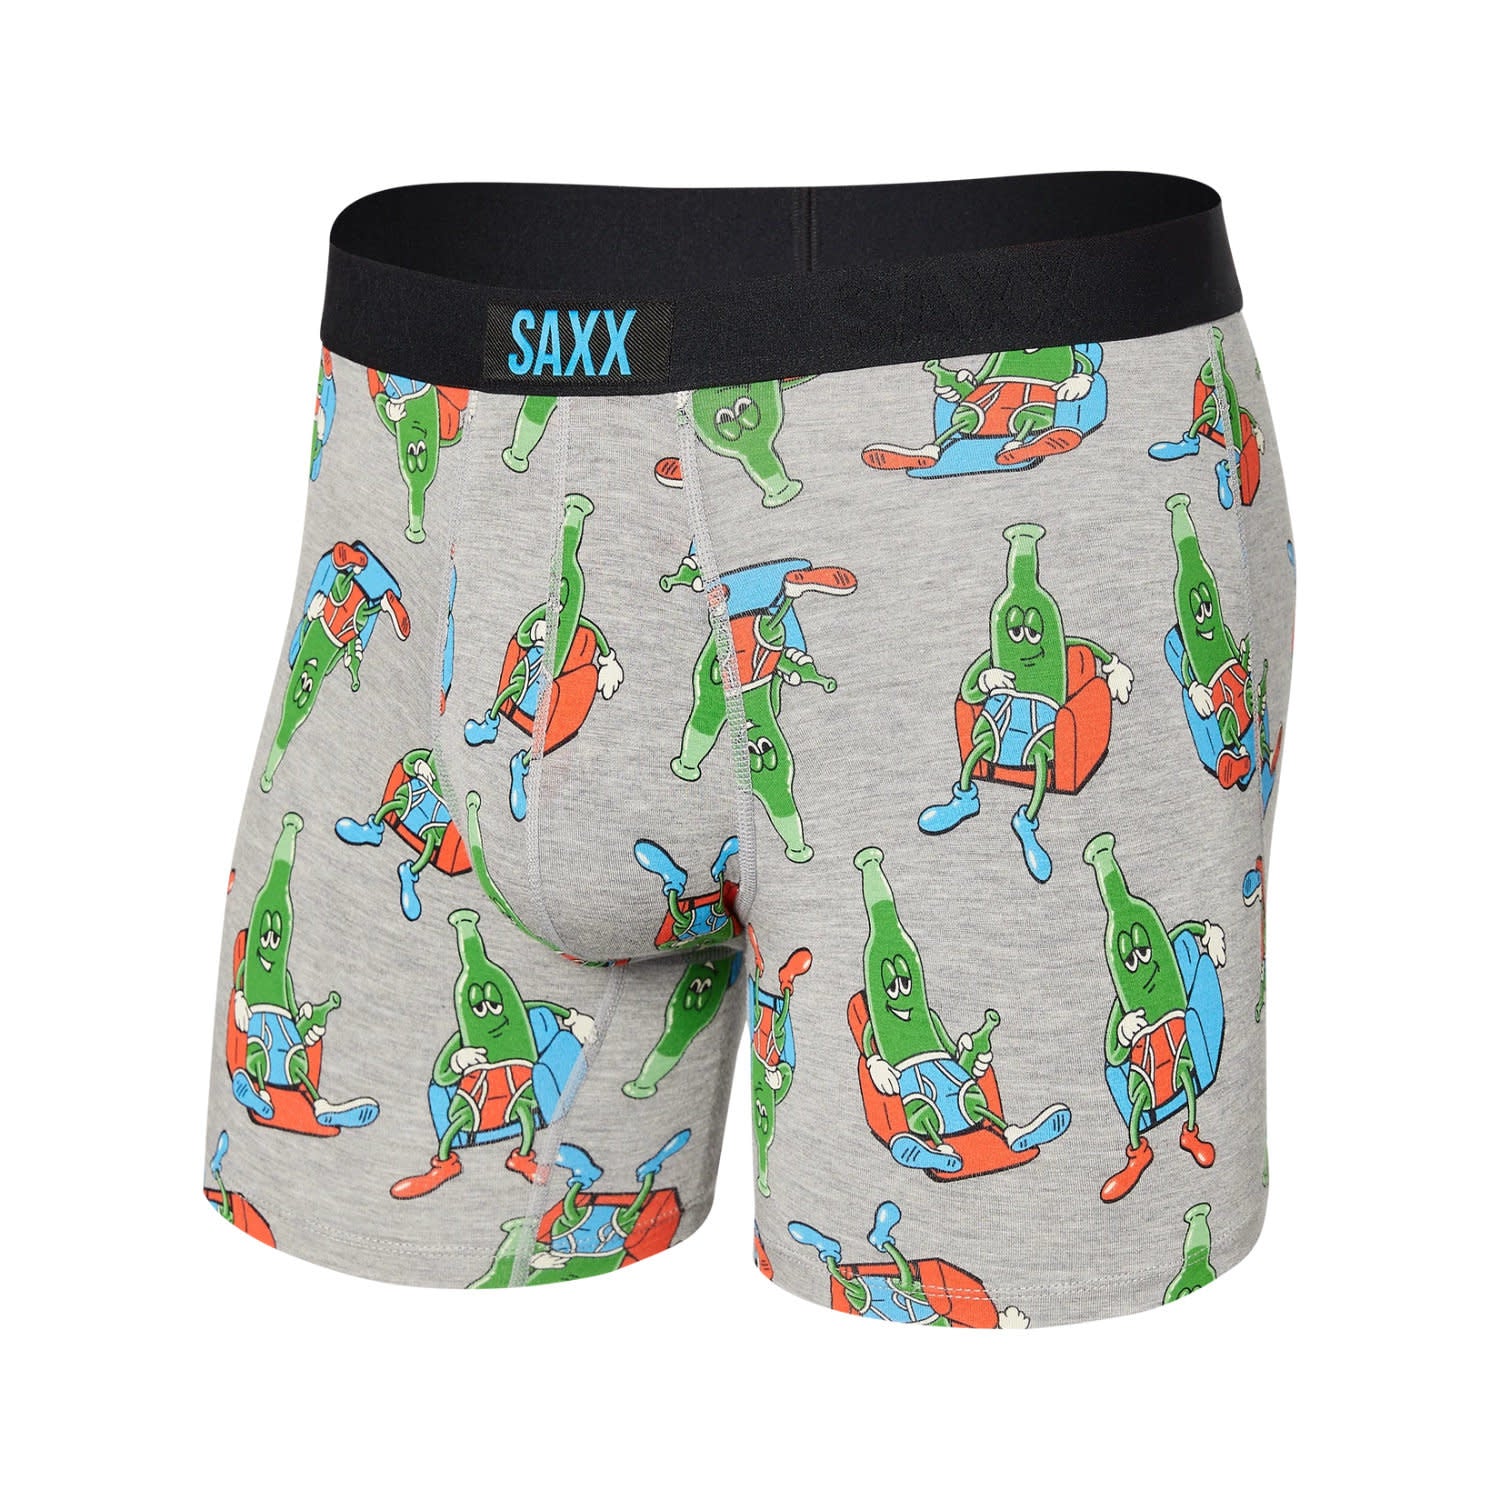 SAXX Vibe Super Soft Boxer Brief - Pants Drunk - Grey Heather - 1 - Underwear - Boxer Briefs